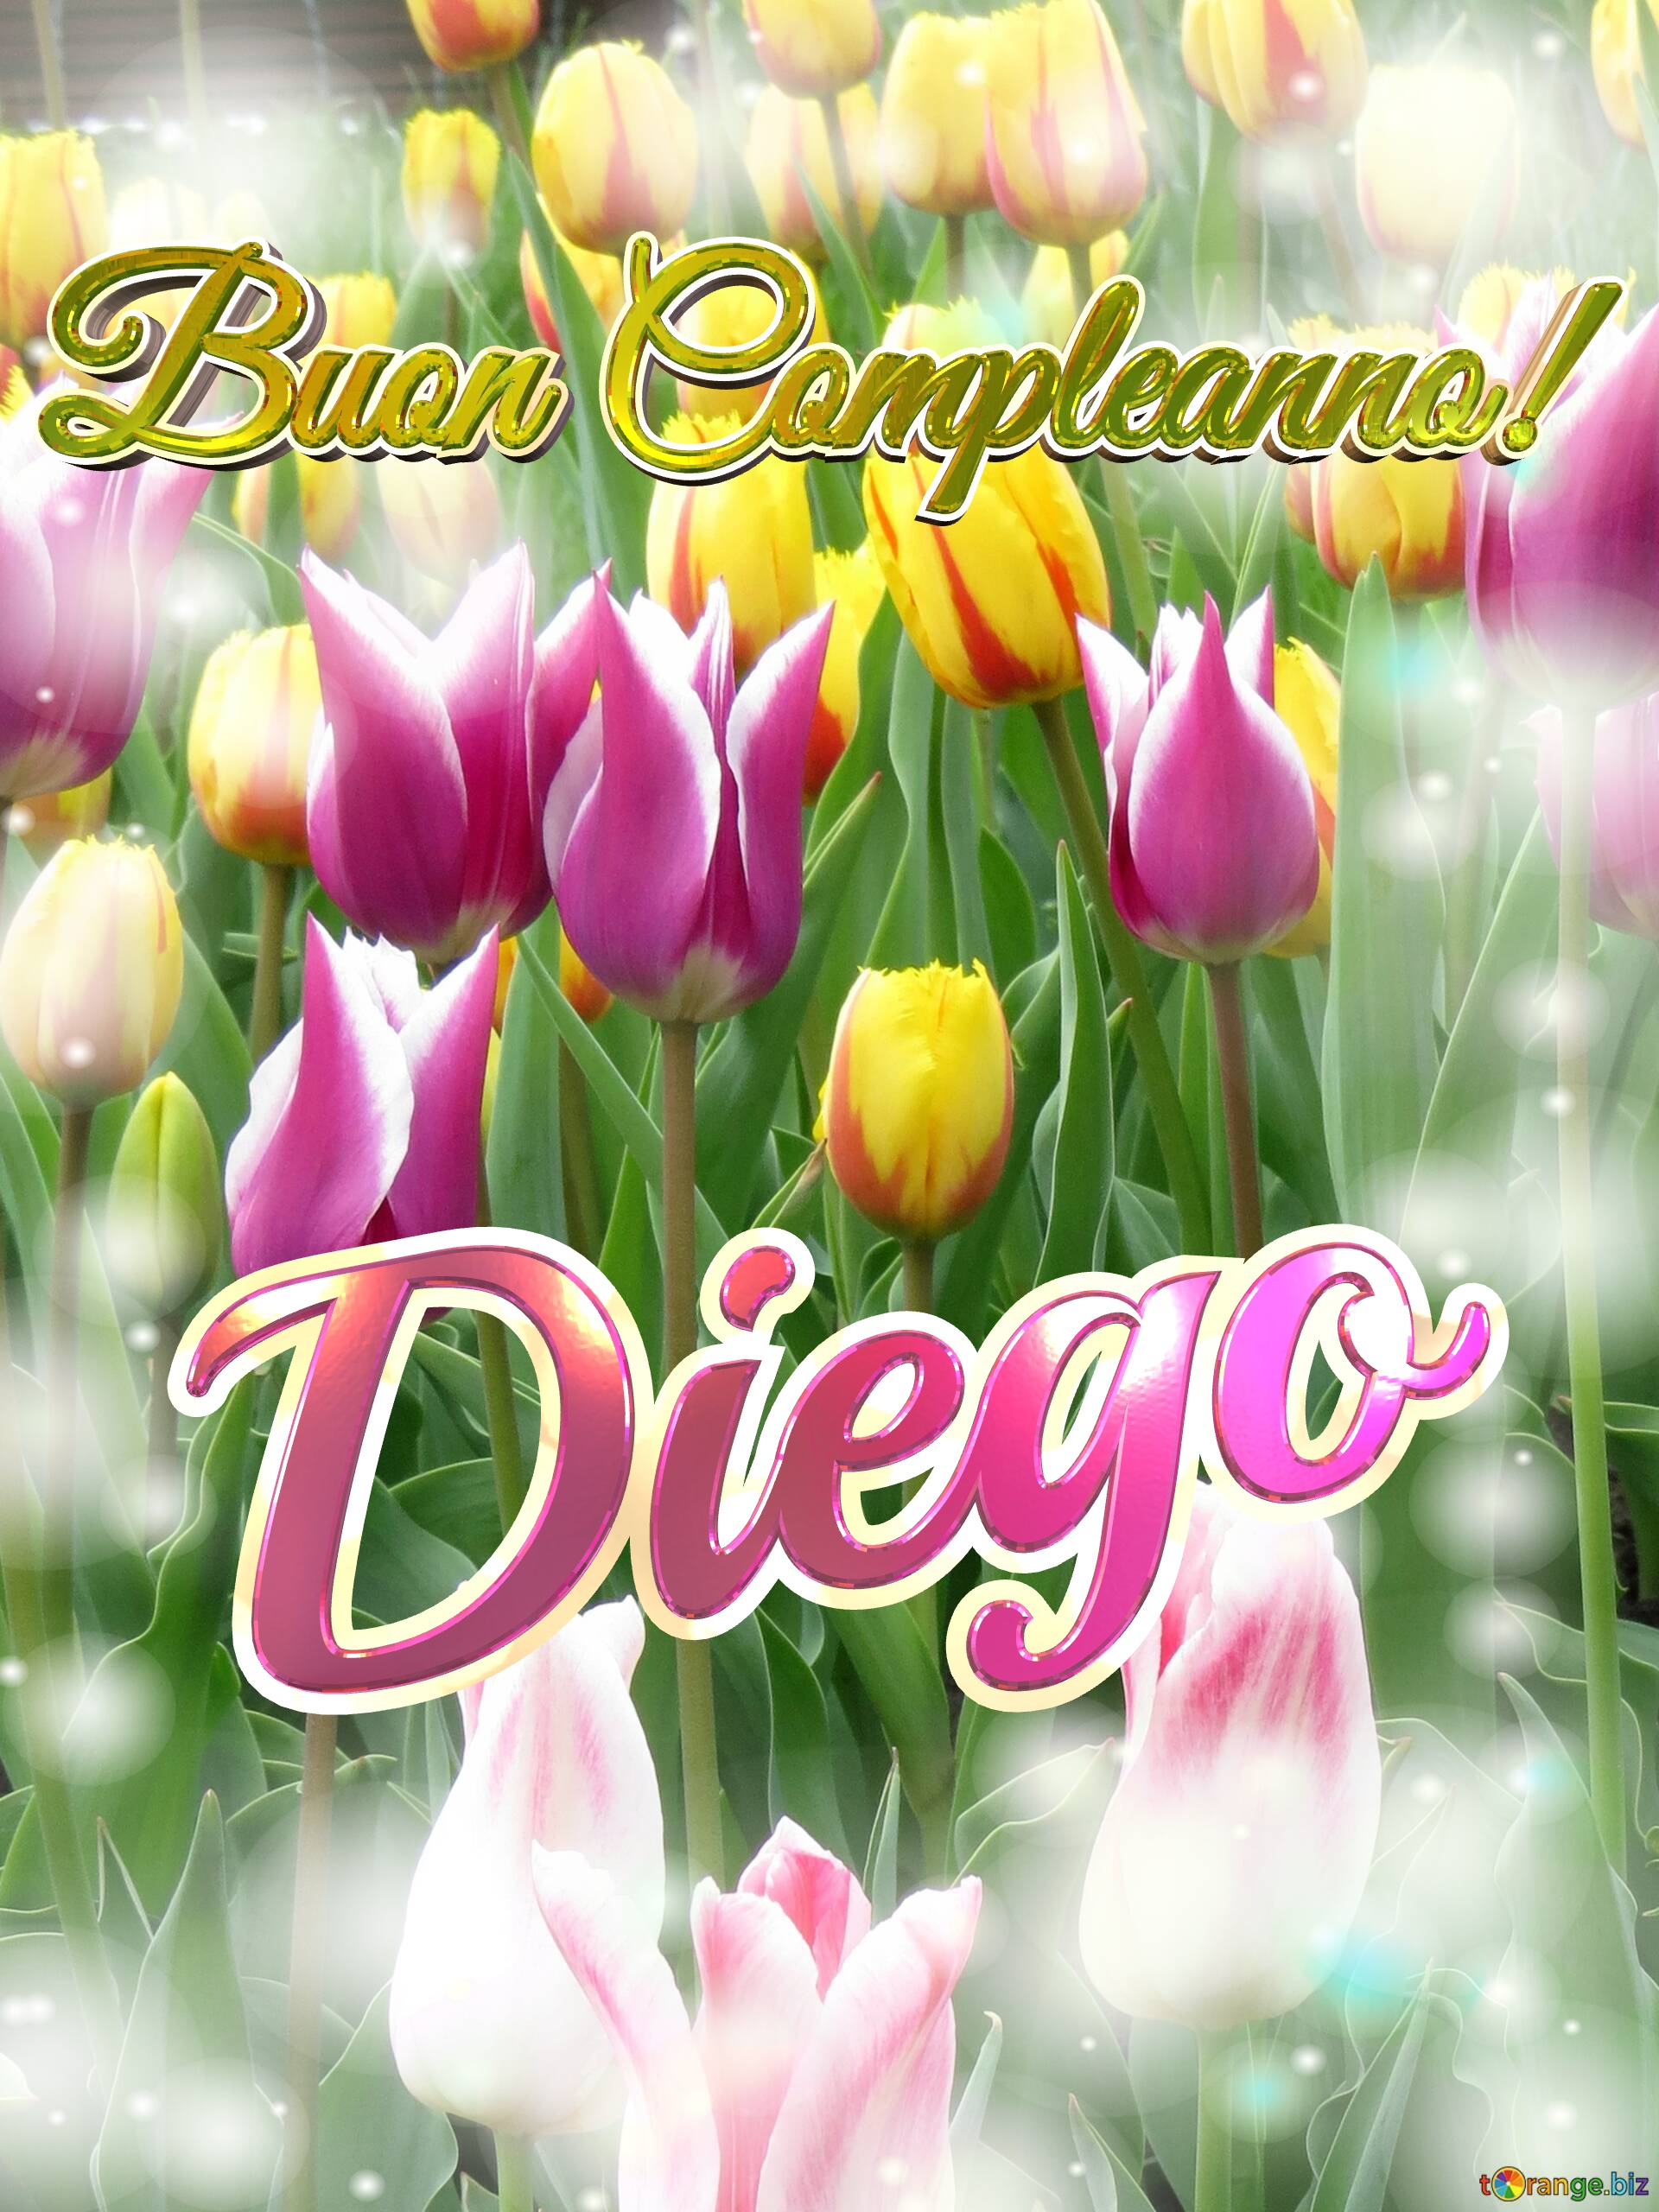 Buon Compleanno! Diego  Questi tulipani ti portano la bellezza della primavera e la gioia della vita, goditi ogni momento. №0